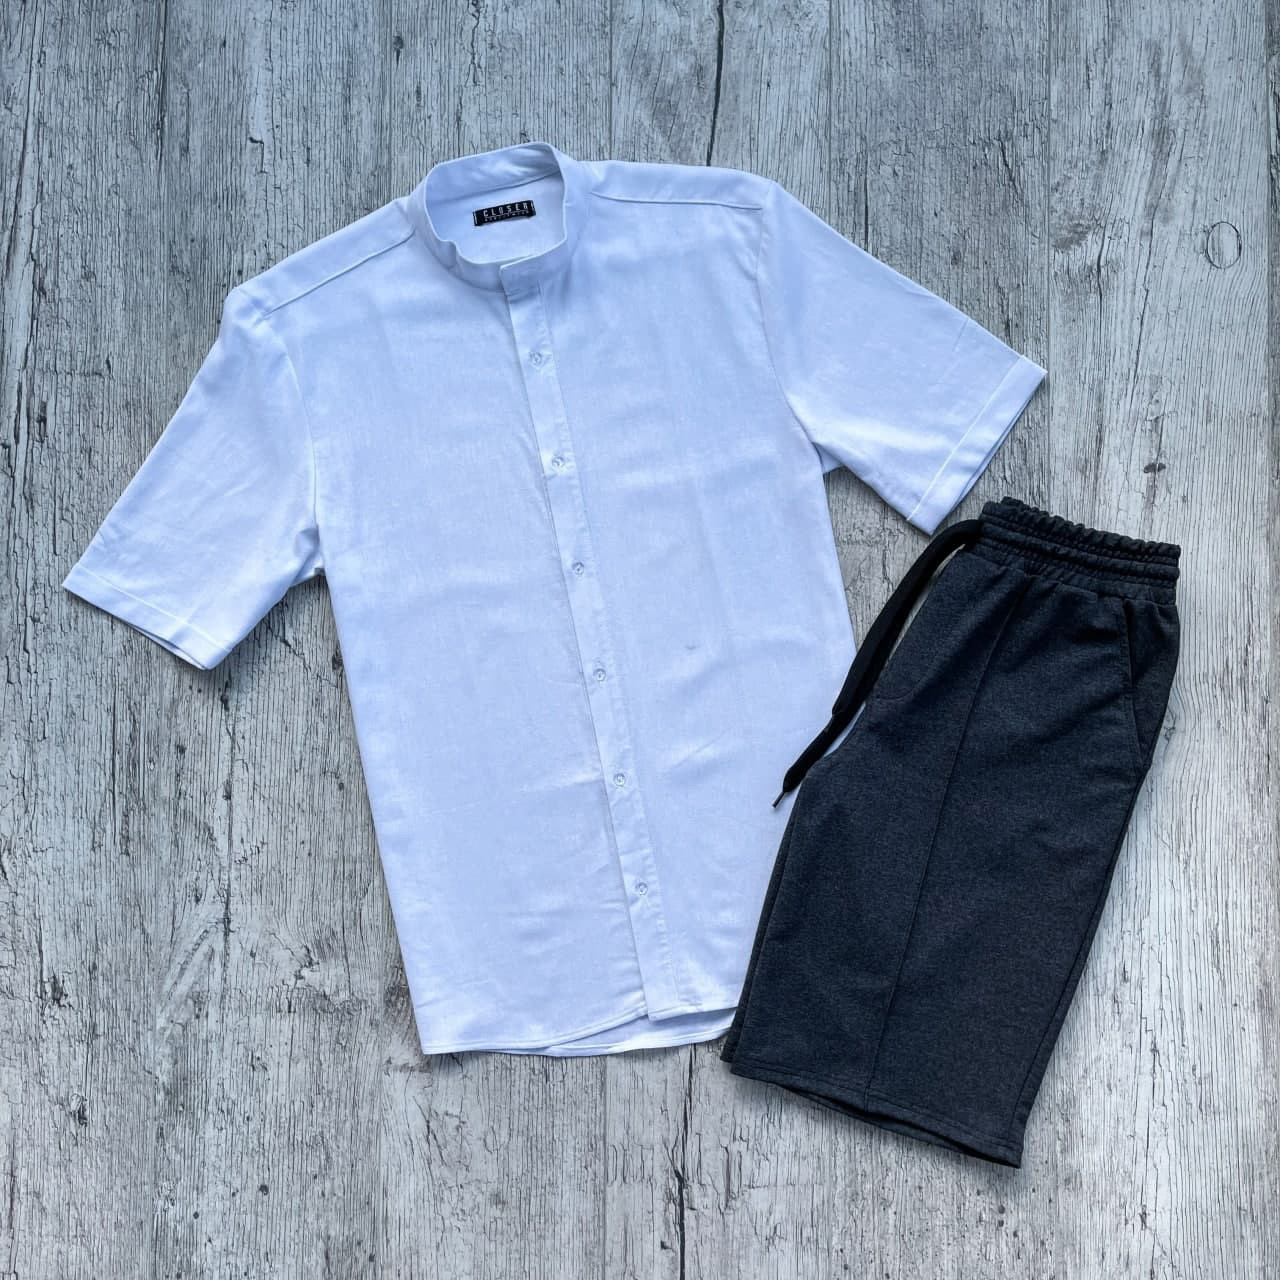 Комплект мужской Шорты + Рубашка CLOSE бело-серый | Костюм мужской летний повседневный ЛЮКС качества